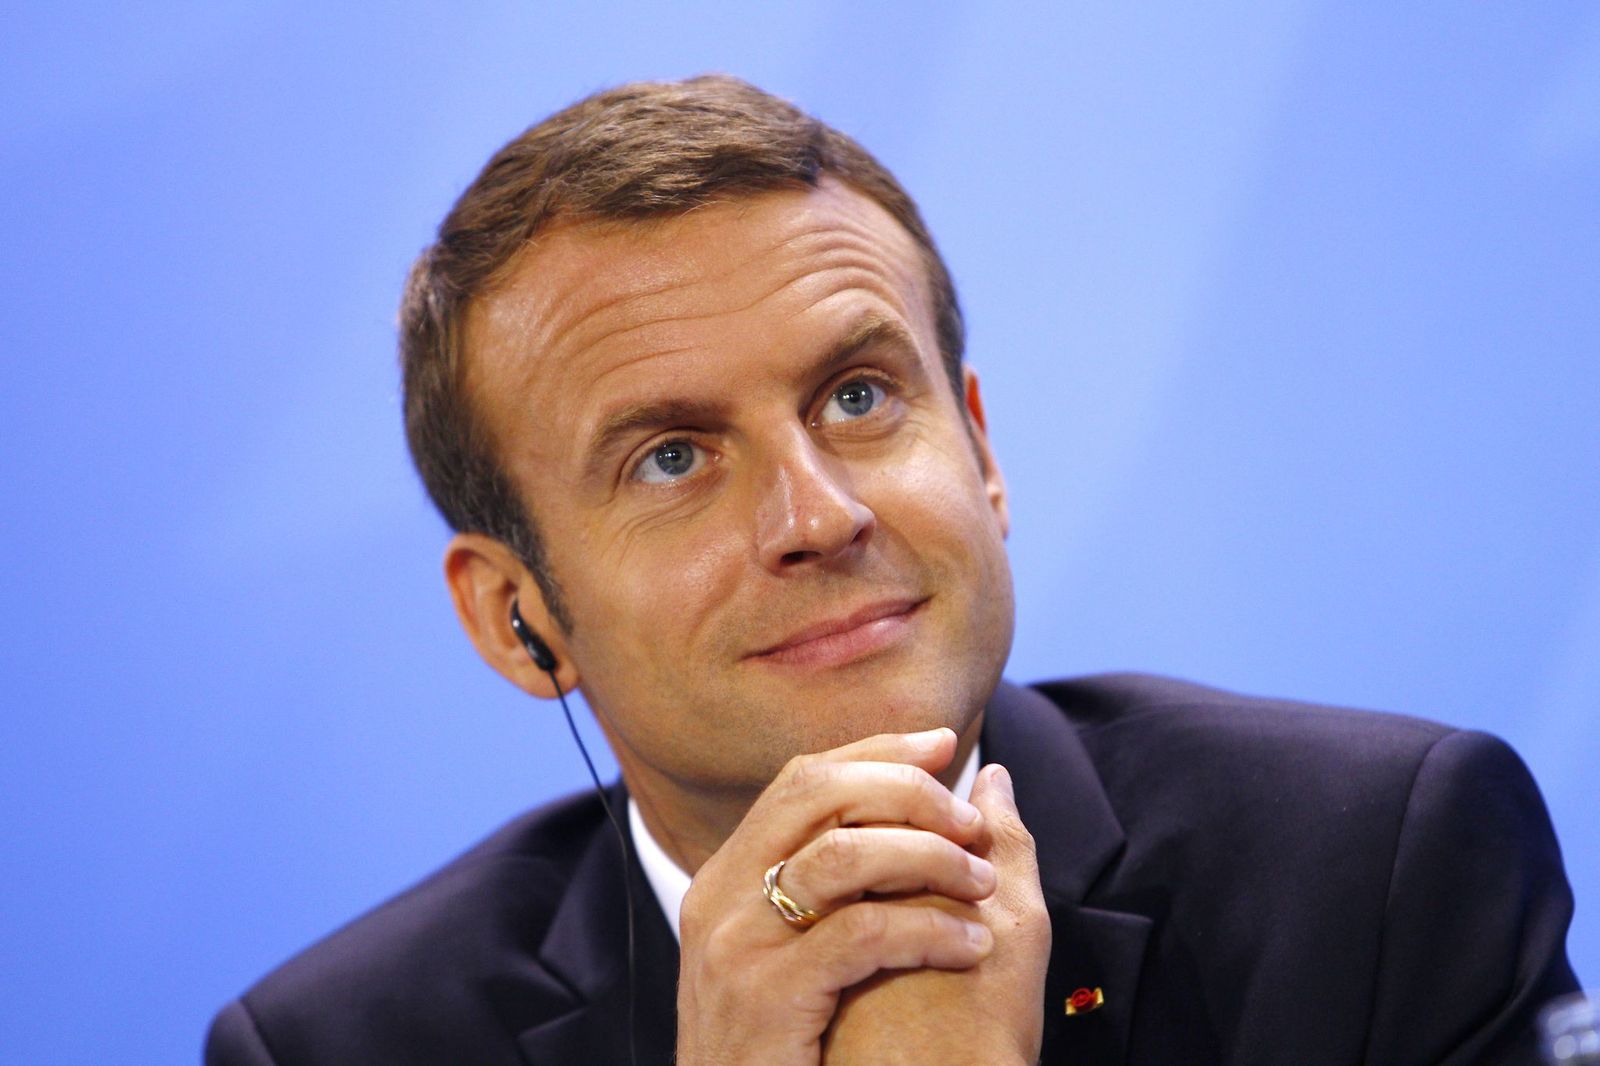 Le président de la République Emmanuel Macron | Getty Images